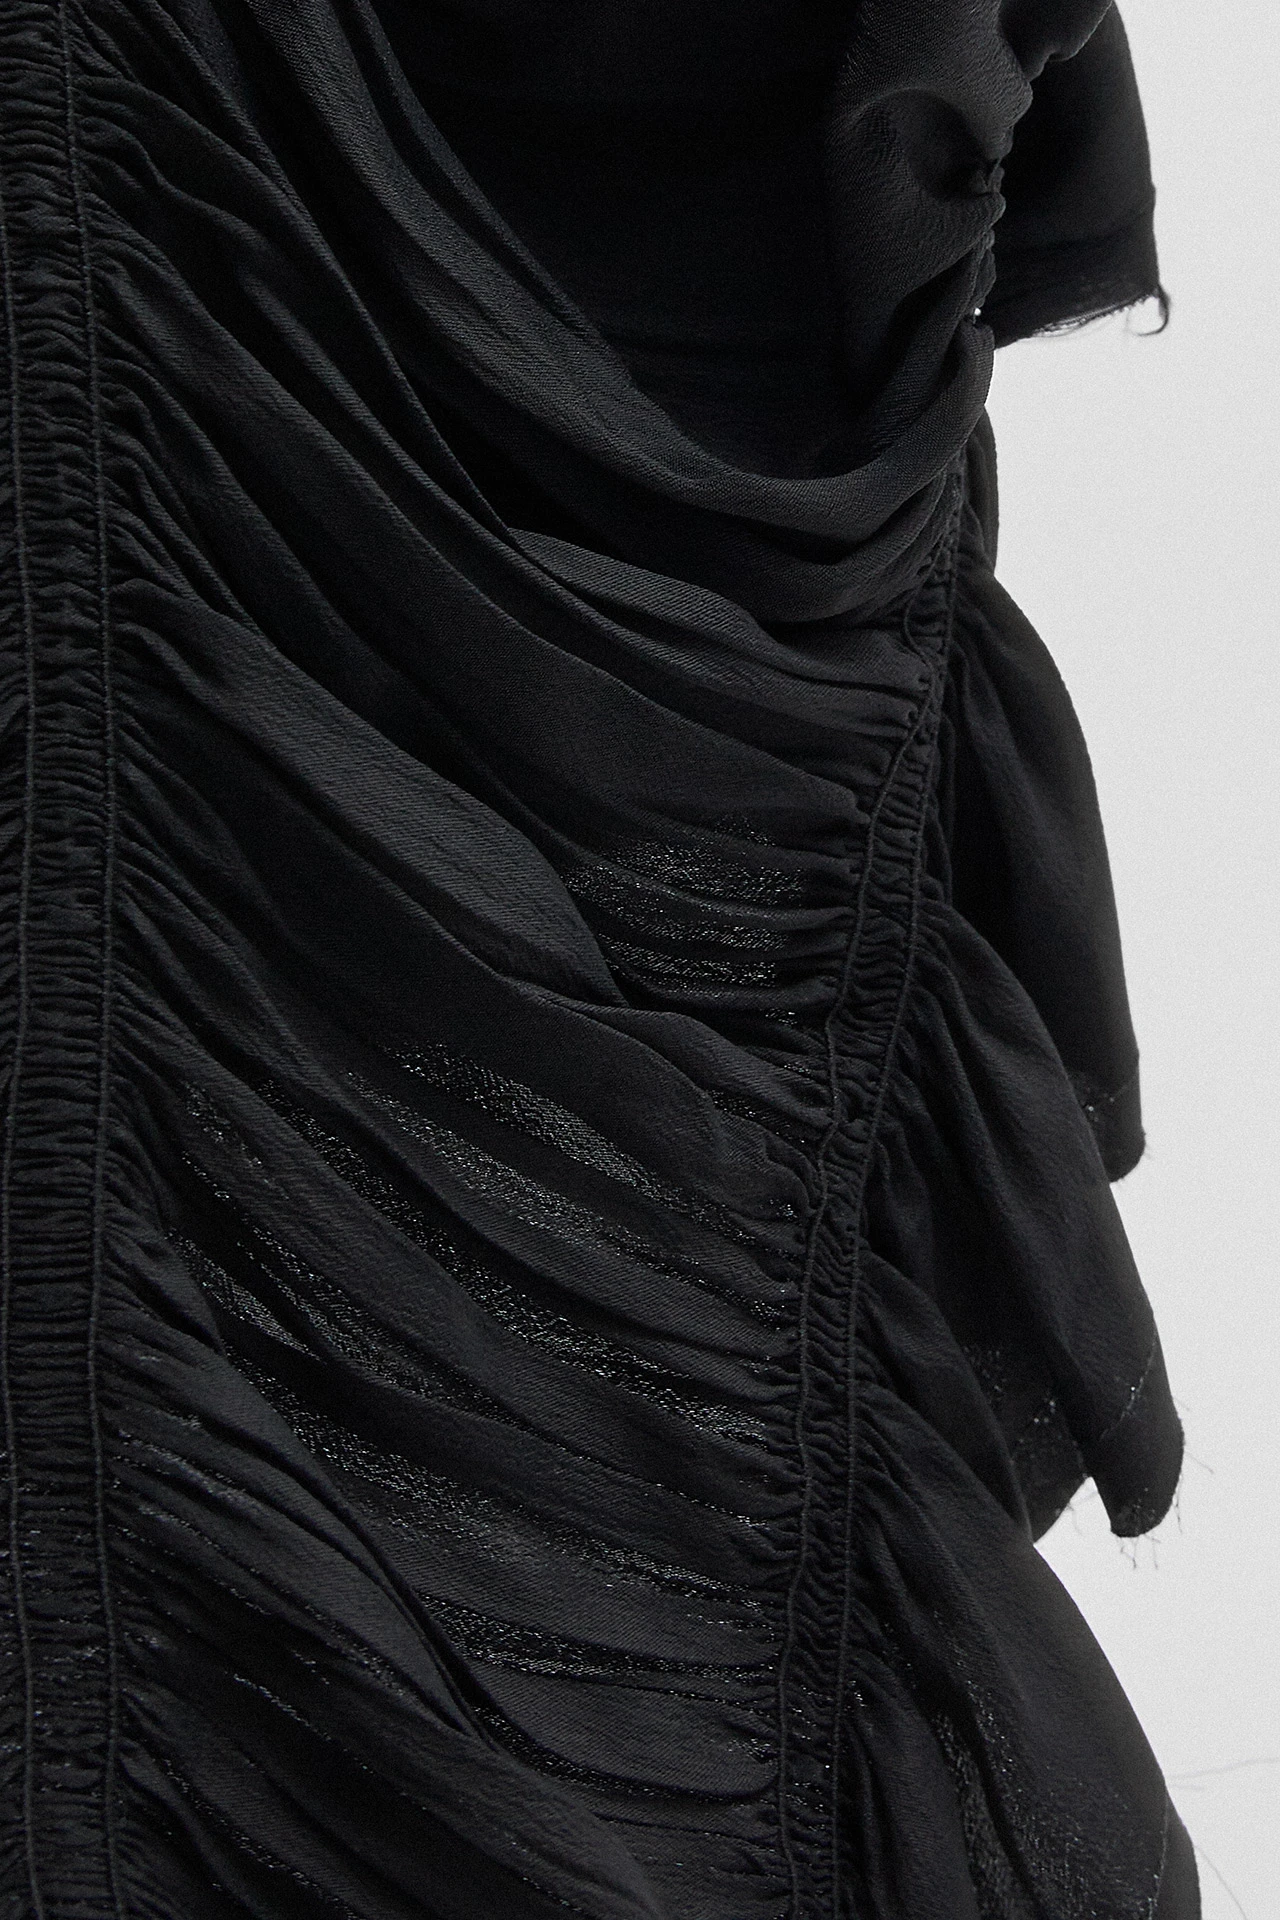 Miista-aiko-black-skirt-02